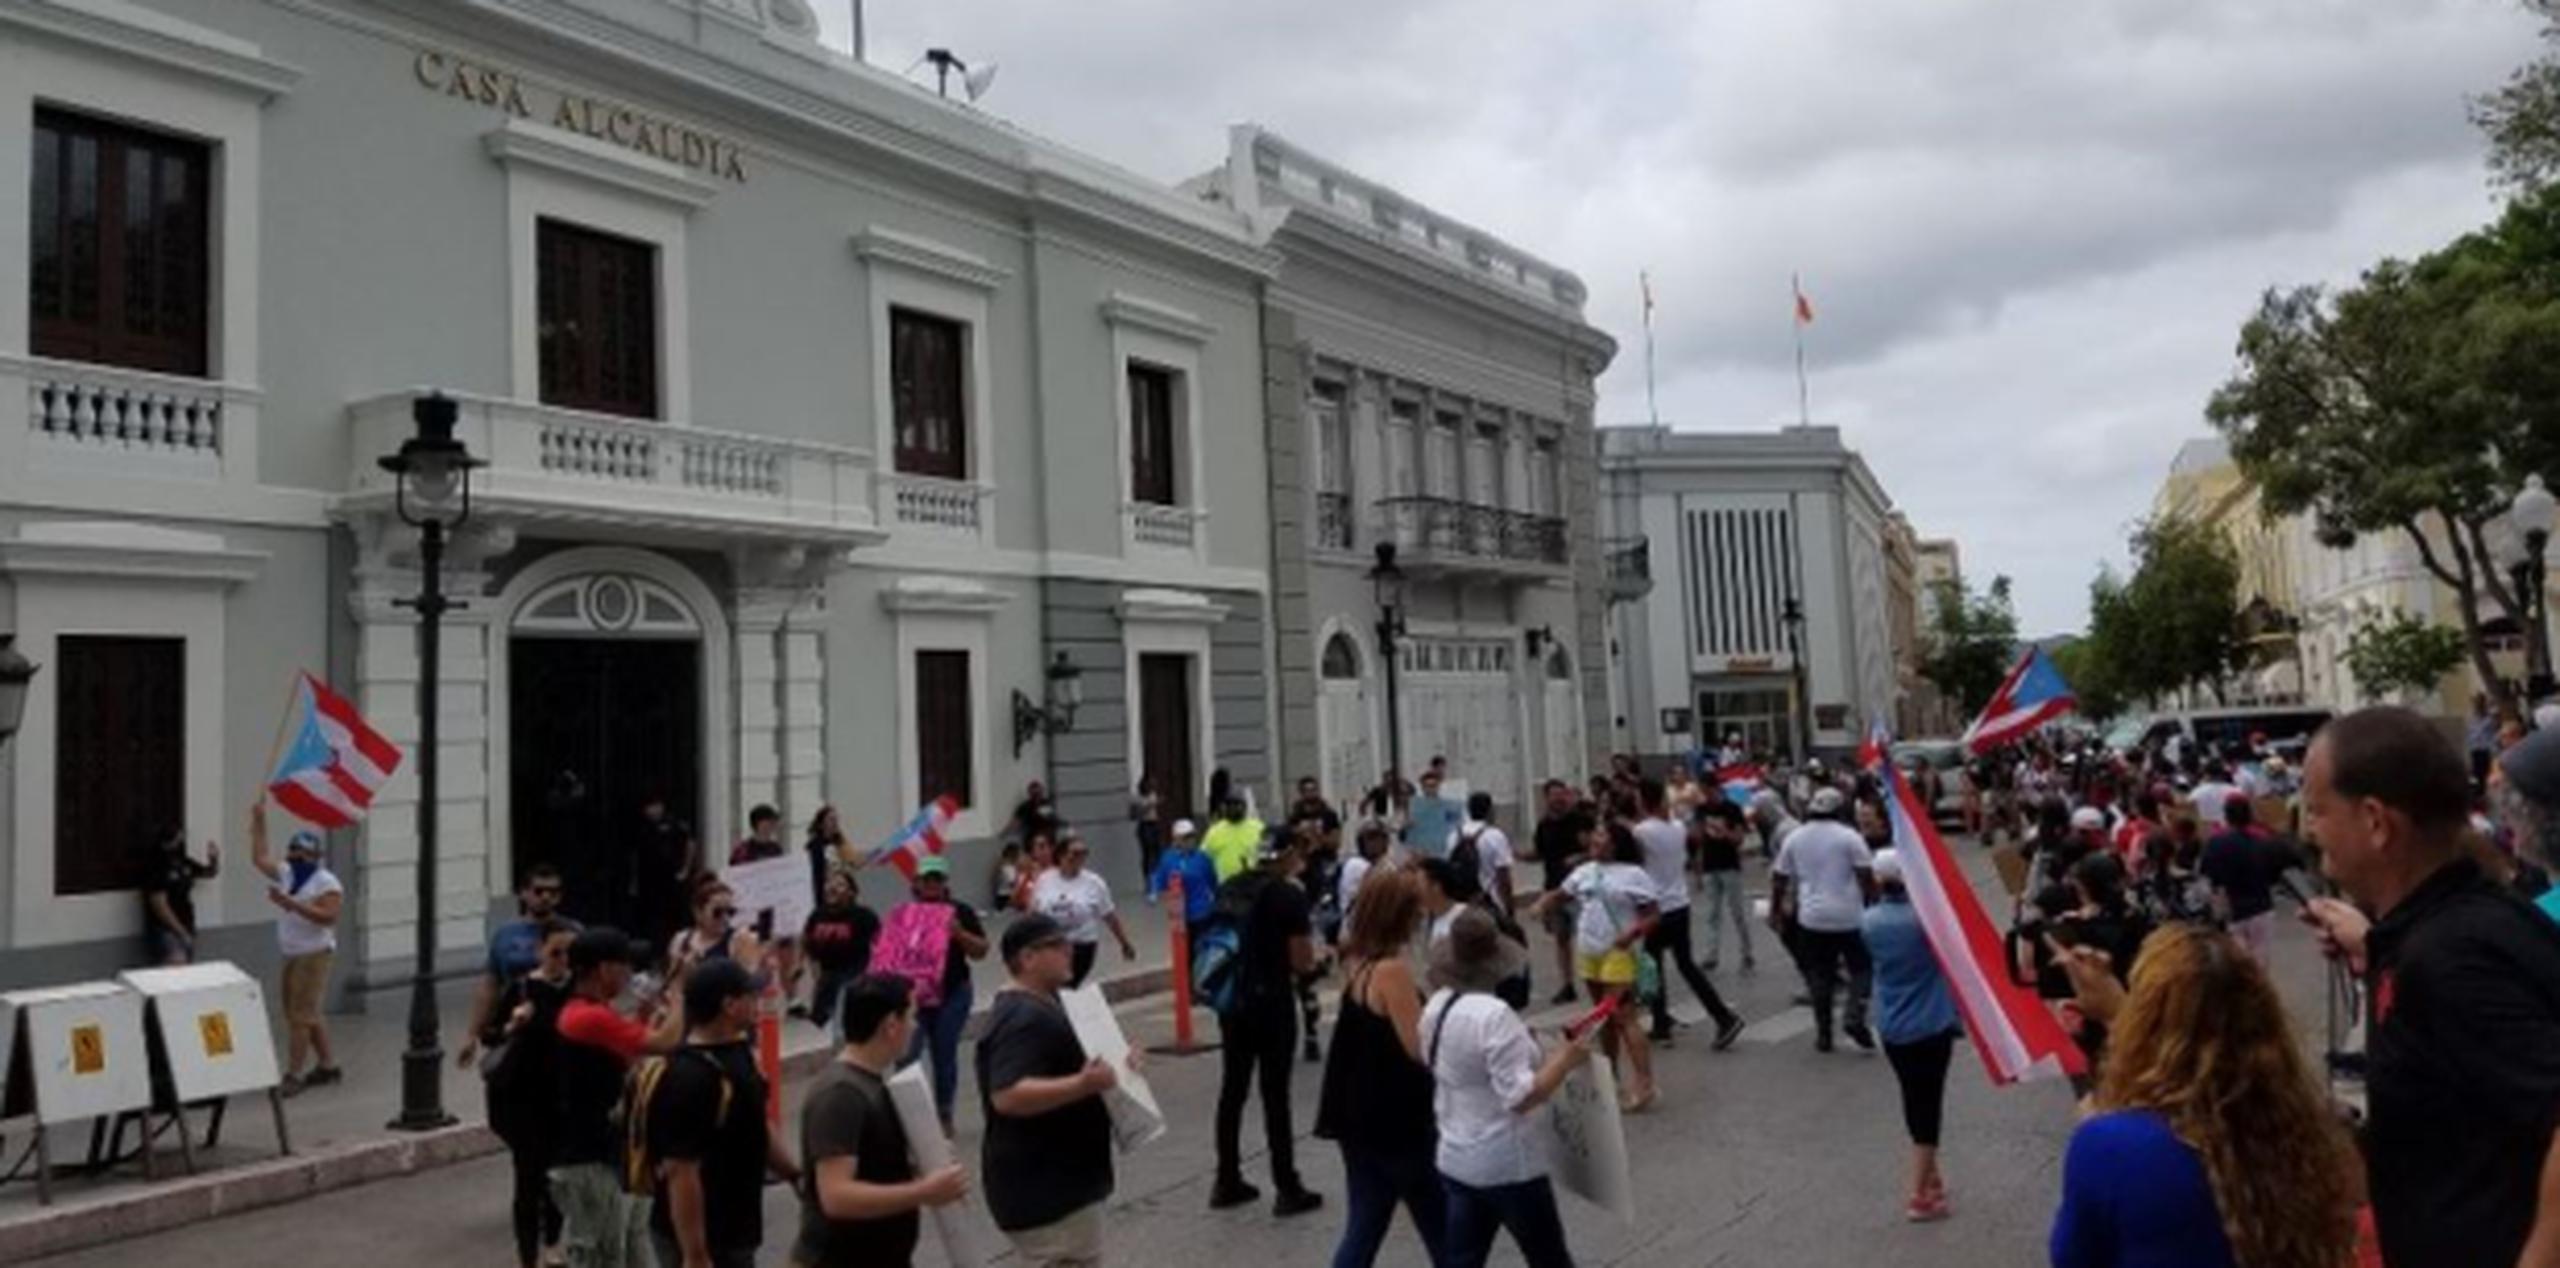 Ayer no fue un día normal en Ponce debido al Paro Nacional convocado en el Día Internacional de los Trabajadores. (michelle.estrada@gfrmedia.com)